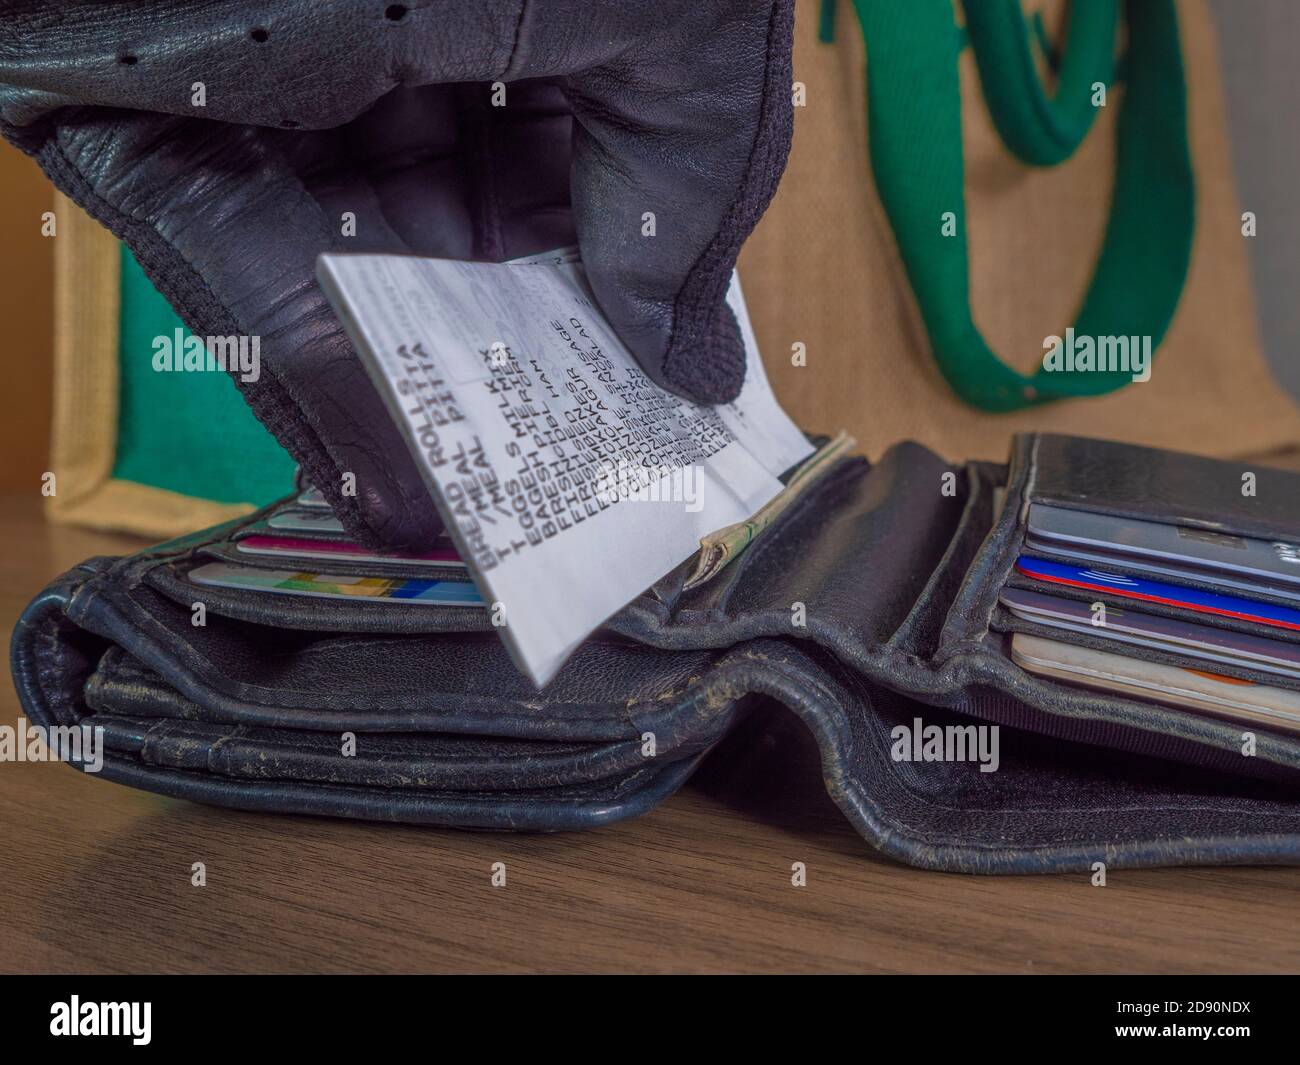 Nahaufnahme POV-Aufnahme der Hand eines Kunden, die einen Einkaufsbeleg in eine offene Ledertasche vor einer Leinentasche legt. Stockfoto